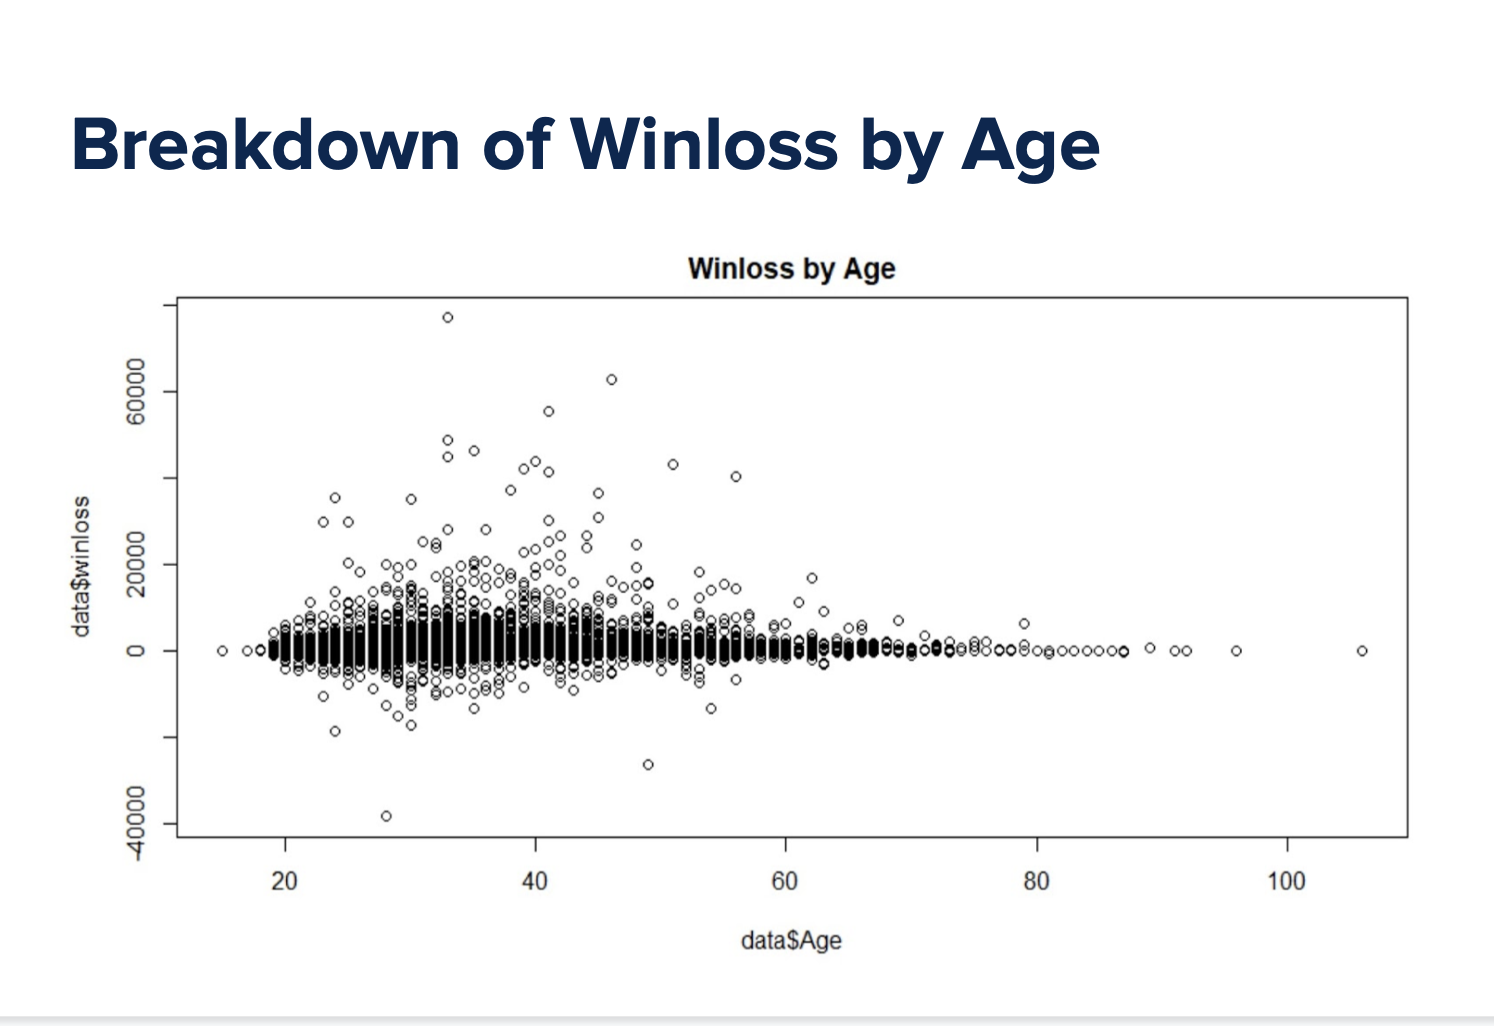 Winloss by Age